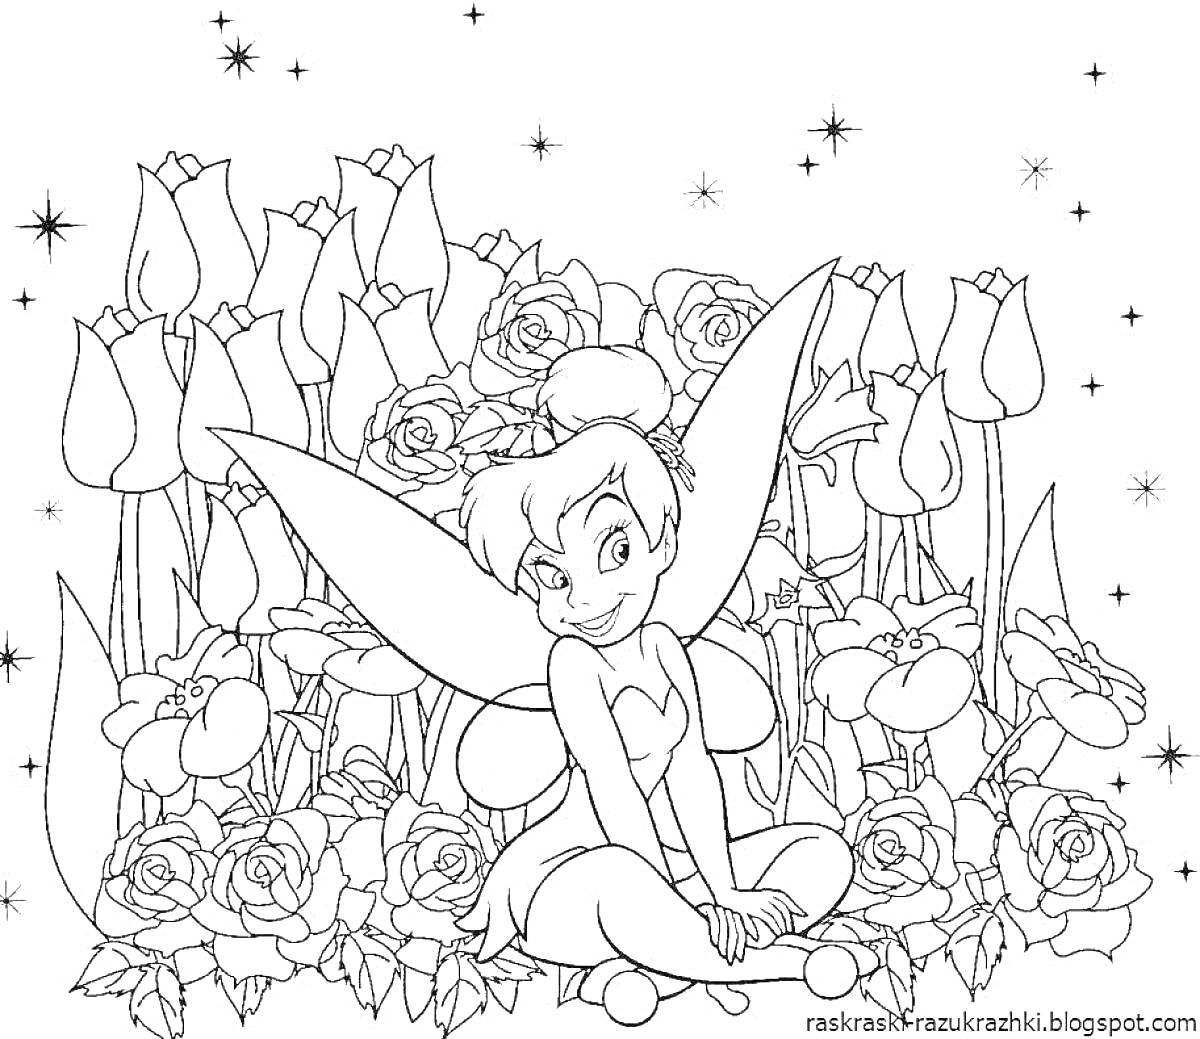 Раскраска Фея среди роз и тюльпанов под звездами